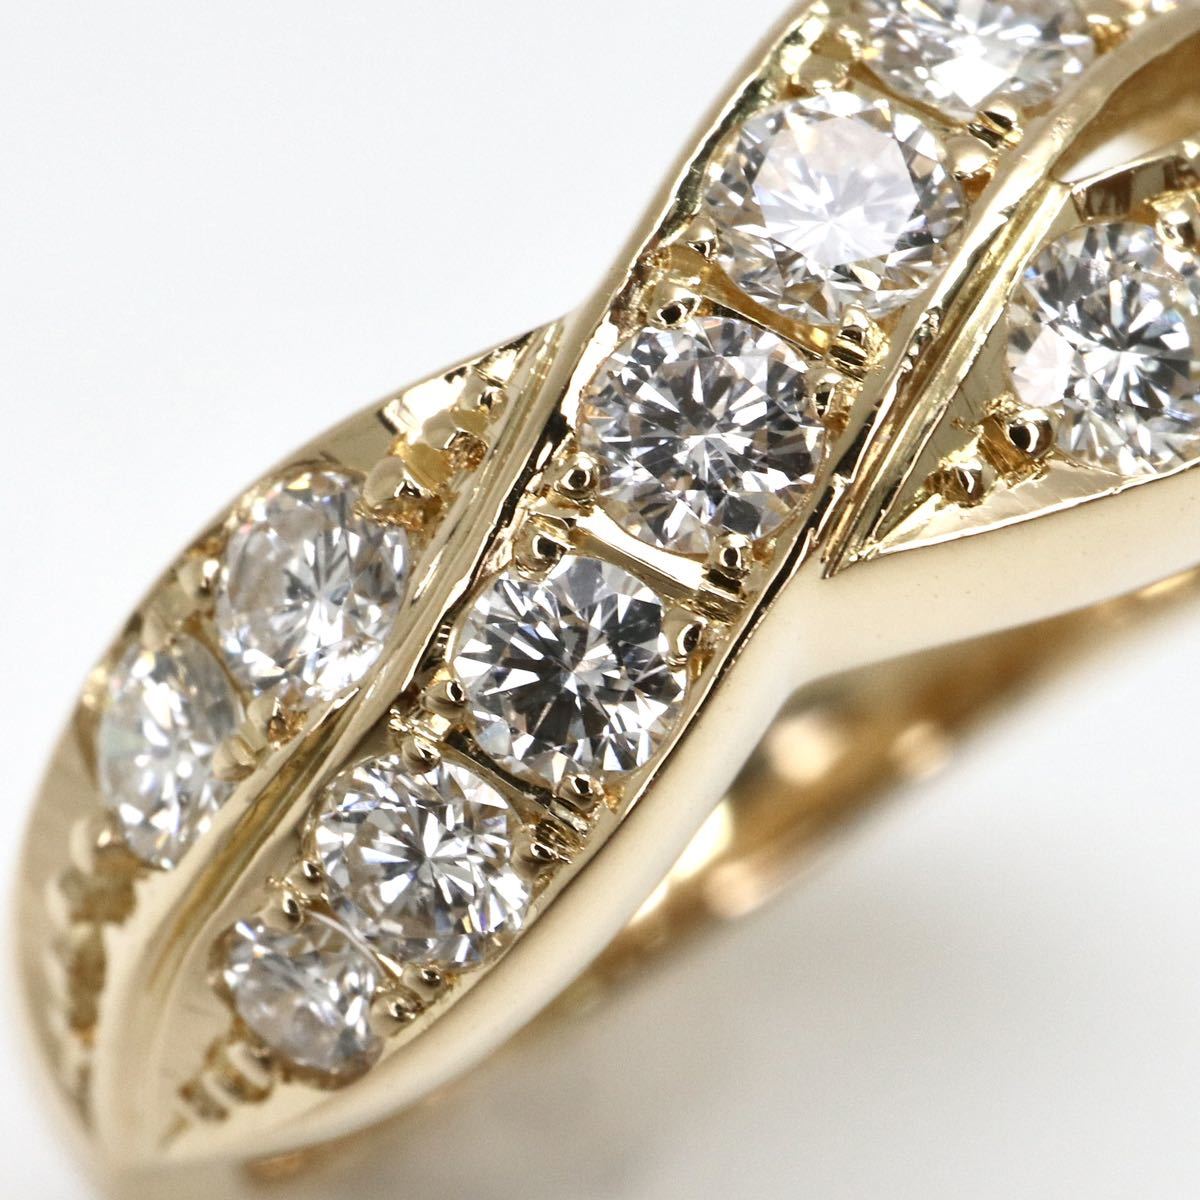 新品仕上げ済み!!◆K18 天然ダイヤモンドリング◆M 4.8g 8号 0.80ct diamond ring 指輪 jewelry pave EC9_画像4